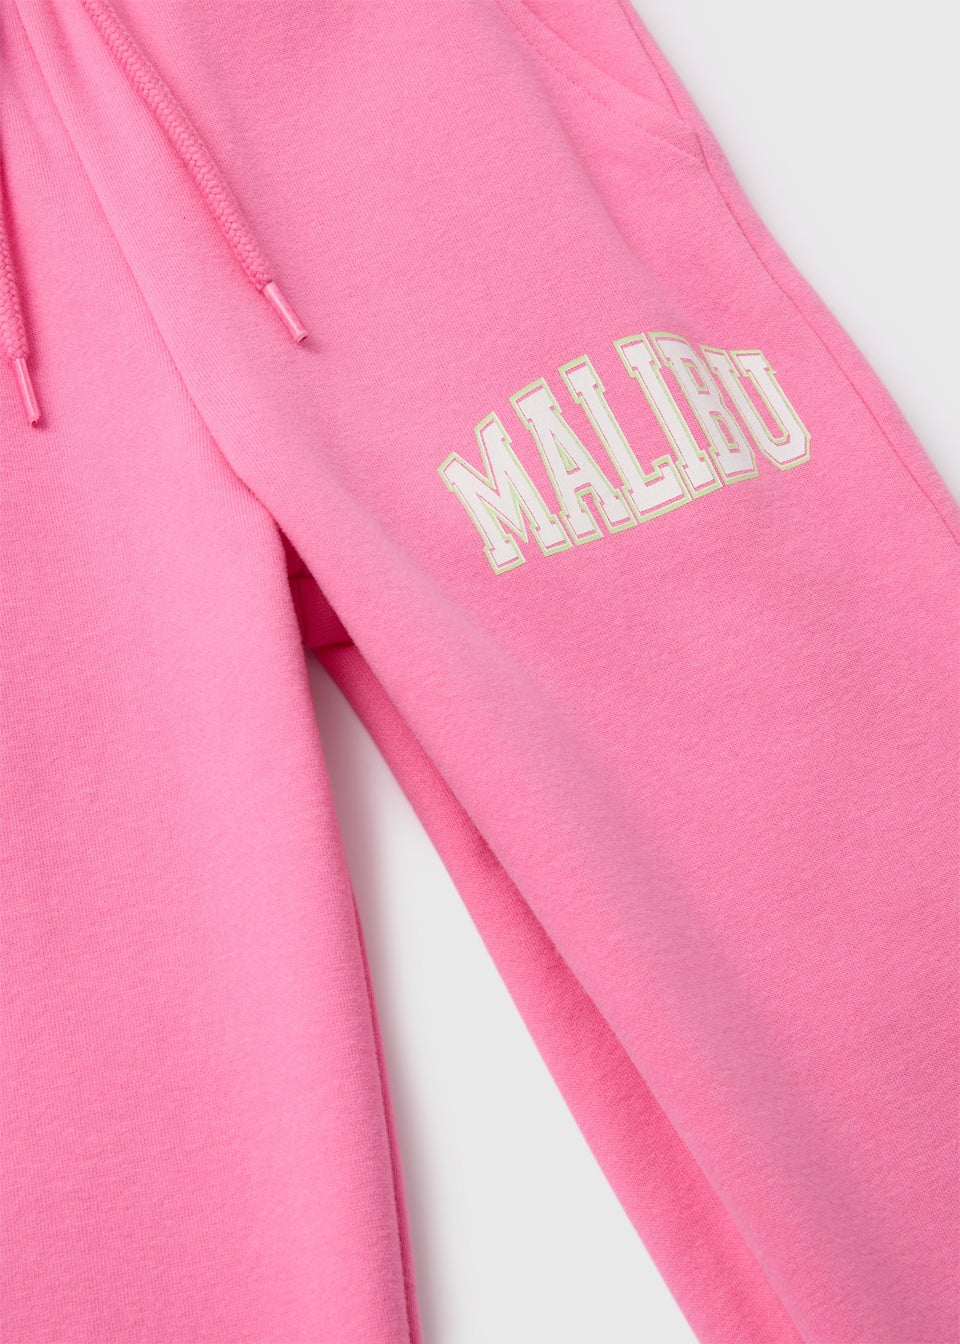 Girls Pink Malibu Slogan Joggers (7-15yrs)